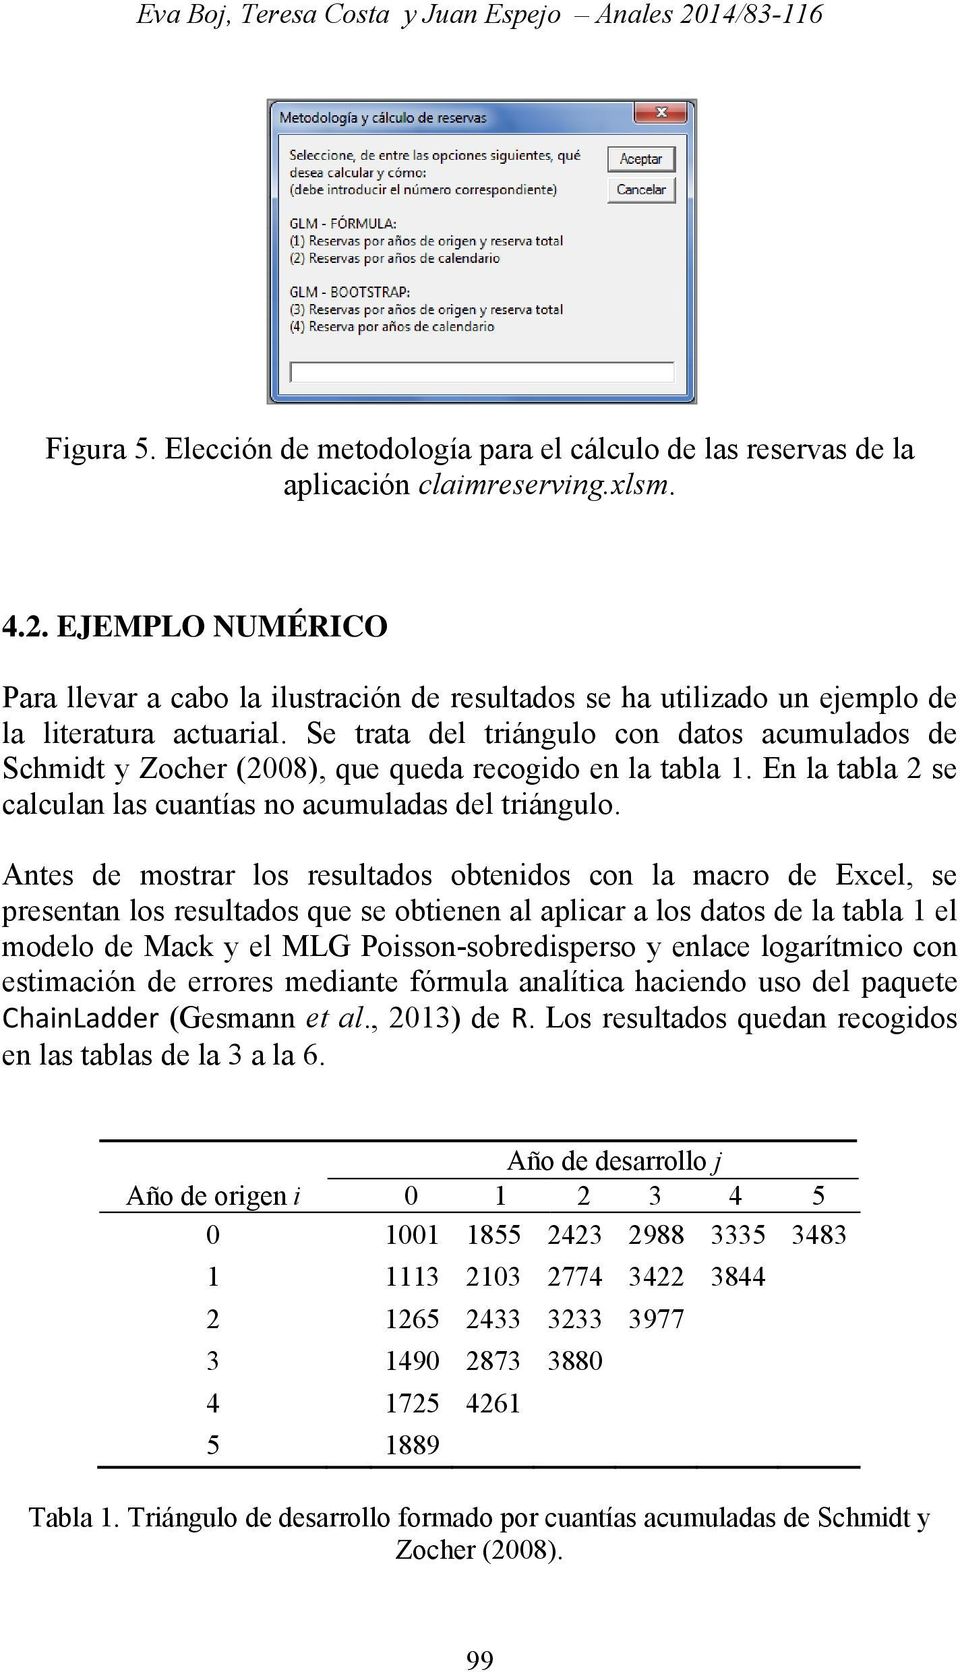 Antes de mostrar los resultados obtenidos con la macro de Excel, se presentan los resultados que se obtienen al aplicar a los datos de la tabla 1 el modelo de Mack y el MLG Poisson-sobredisperso y